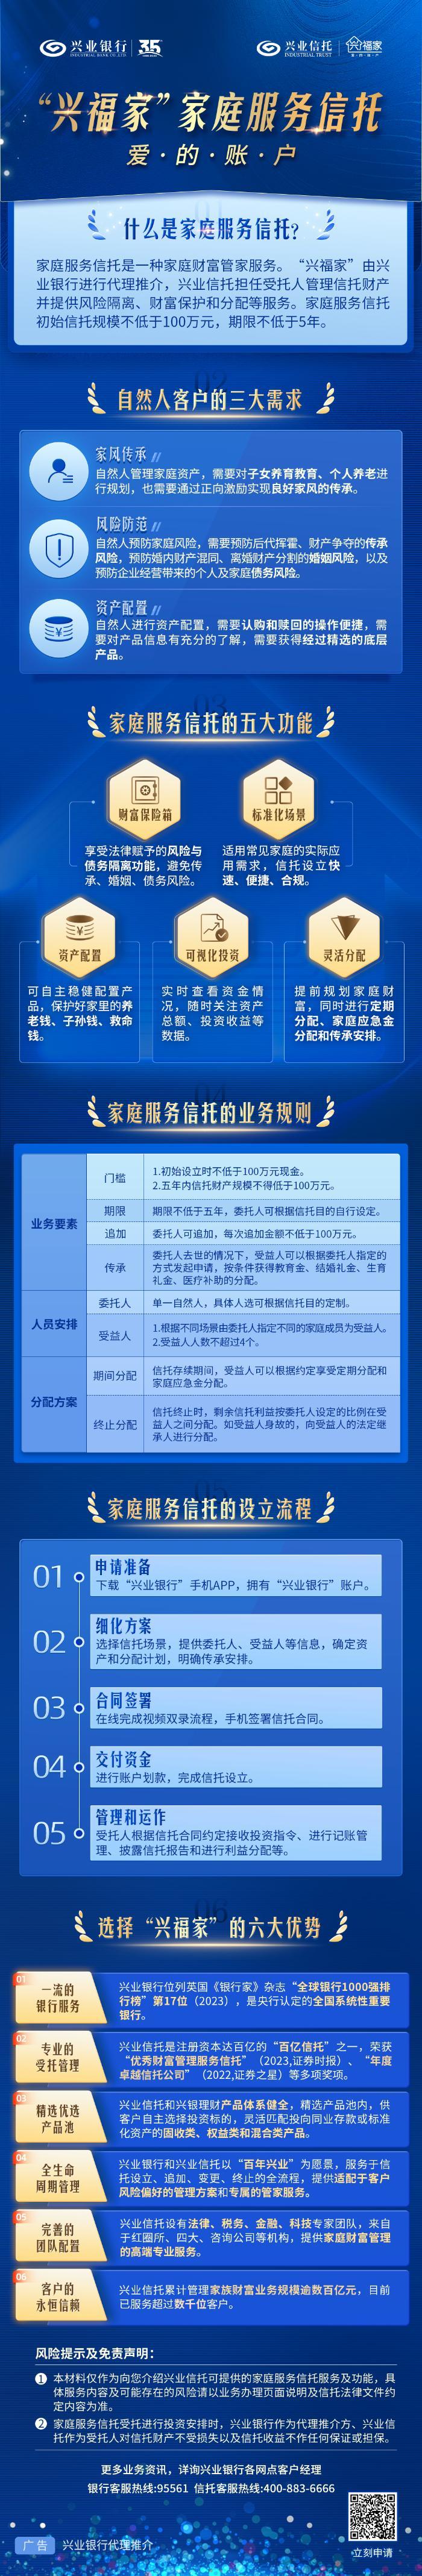 铁甲钢拳冠军赛中文版下载手机安装